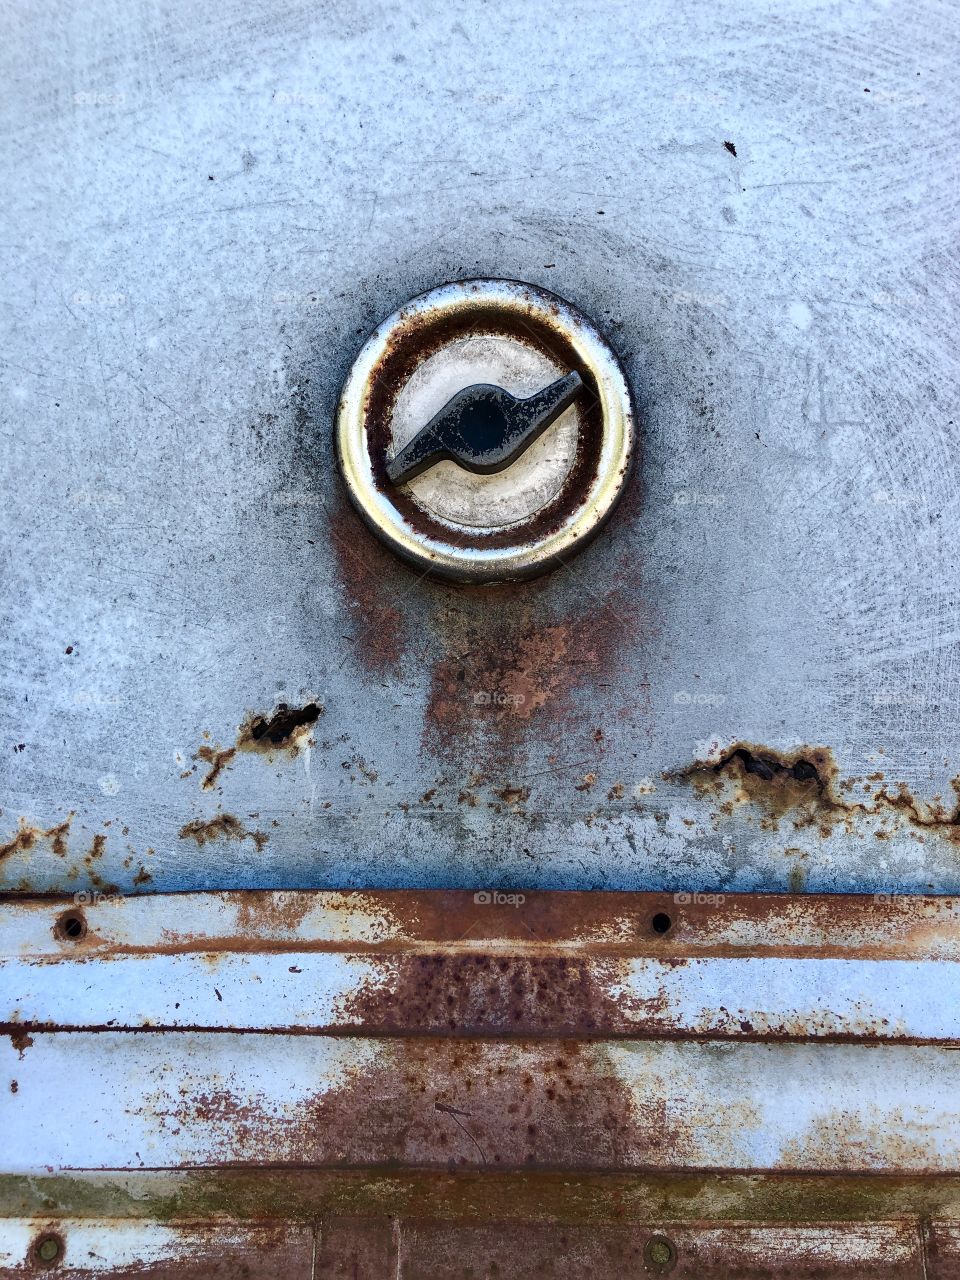 Gas cap on side of old Rusty blue van